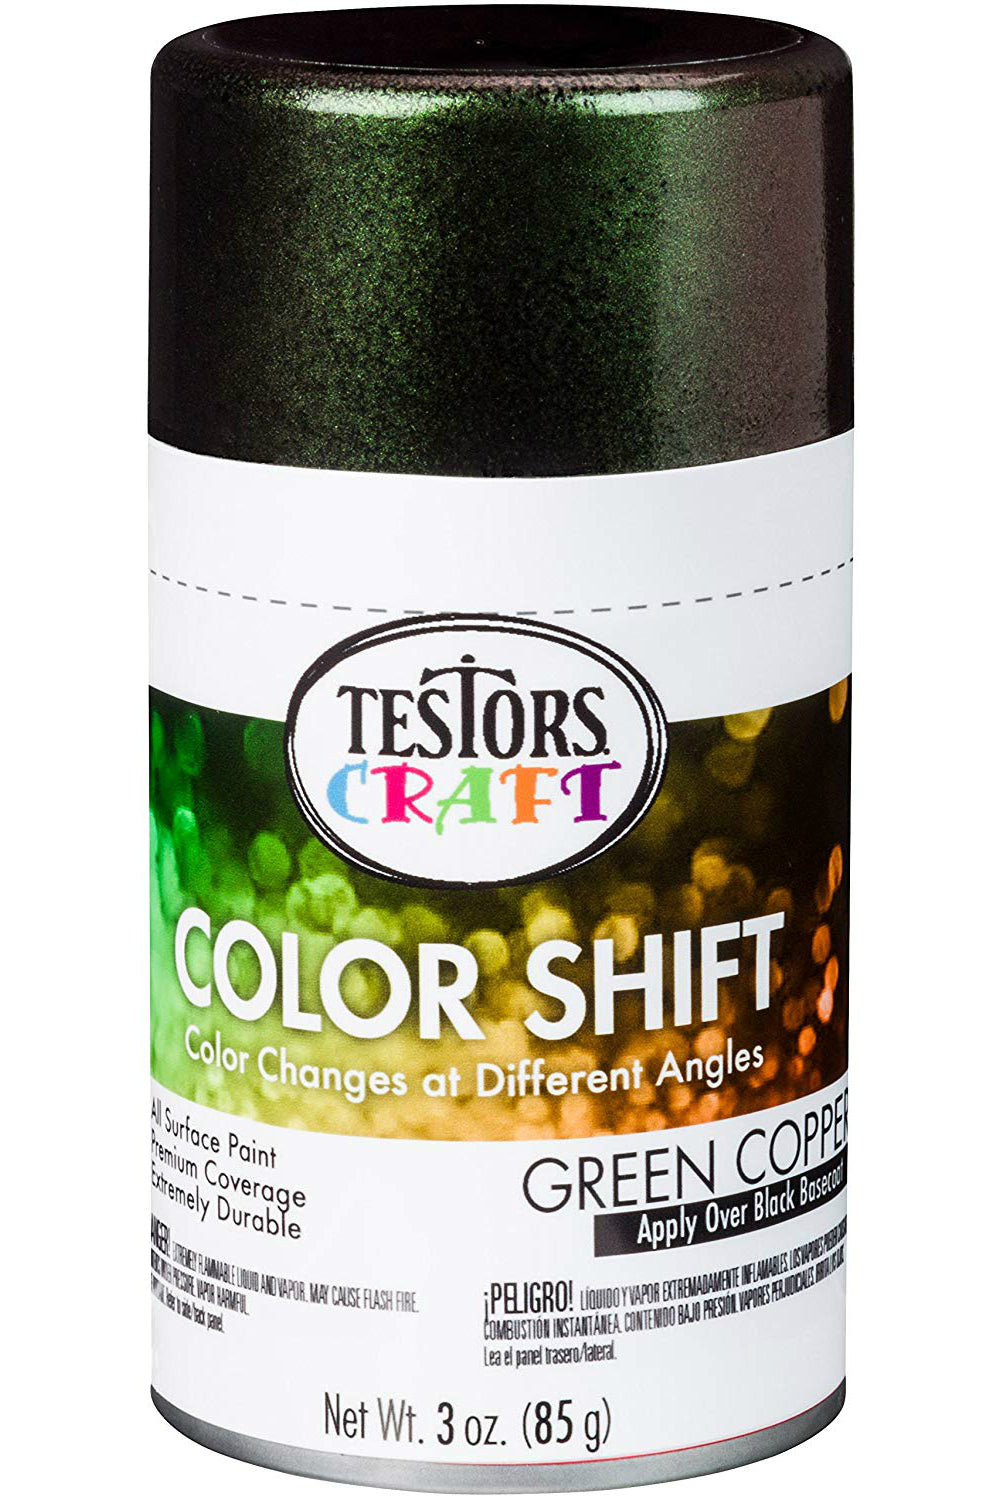 Testors Craft 330572 Color Shift Aerosol Can Paint, Green Copper, 3 Oz